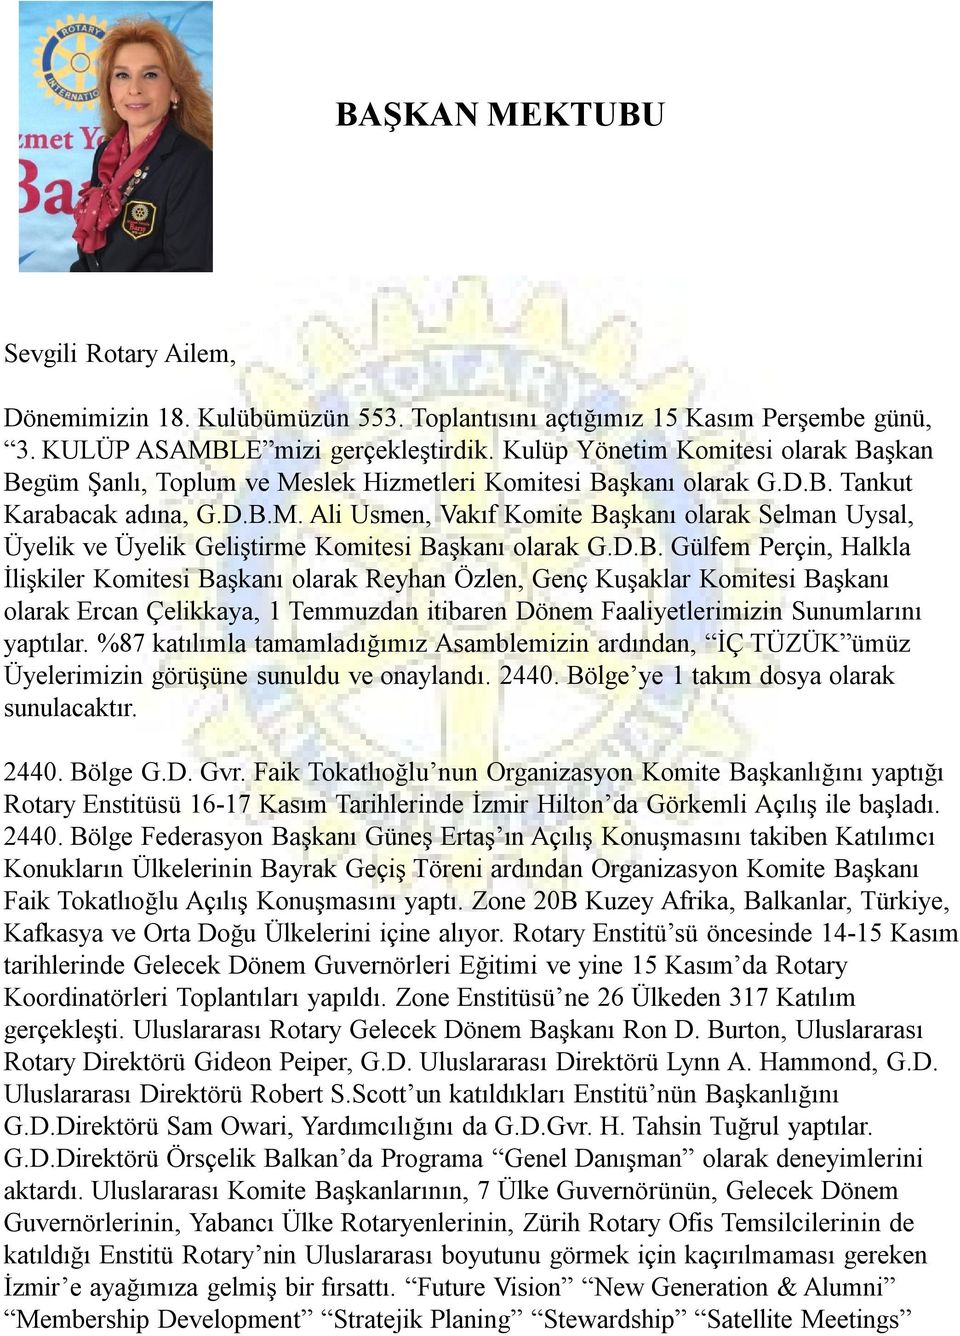 D.B. Gülfem Perçin, Halkla İlişkiler Komitesi Başkanı olarak Reyhan Özlen, Genç Kuşaklar Komitesi Başkanı olarak Ercan Çelikkaya, 1 Temmuzdan itibaren Dönem Faaliyetlerimizin Sunumlarını yaptılar.